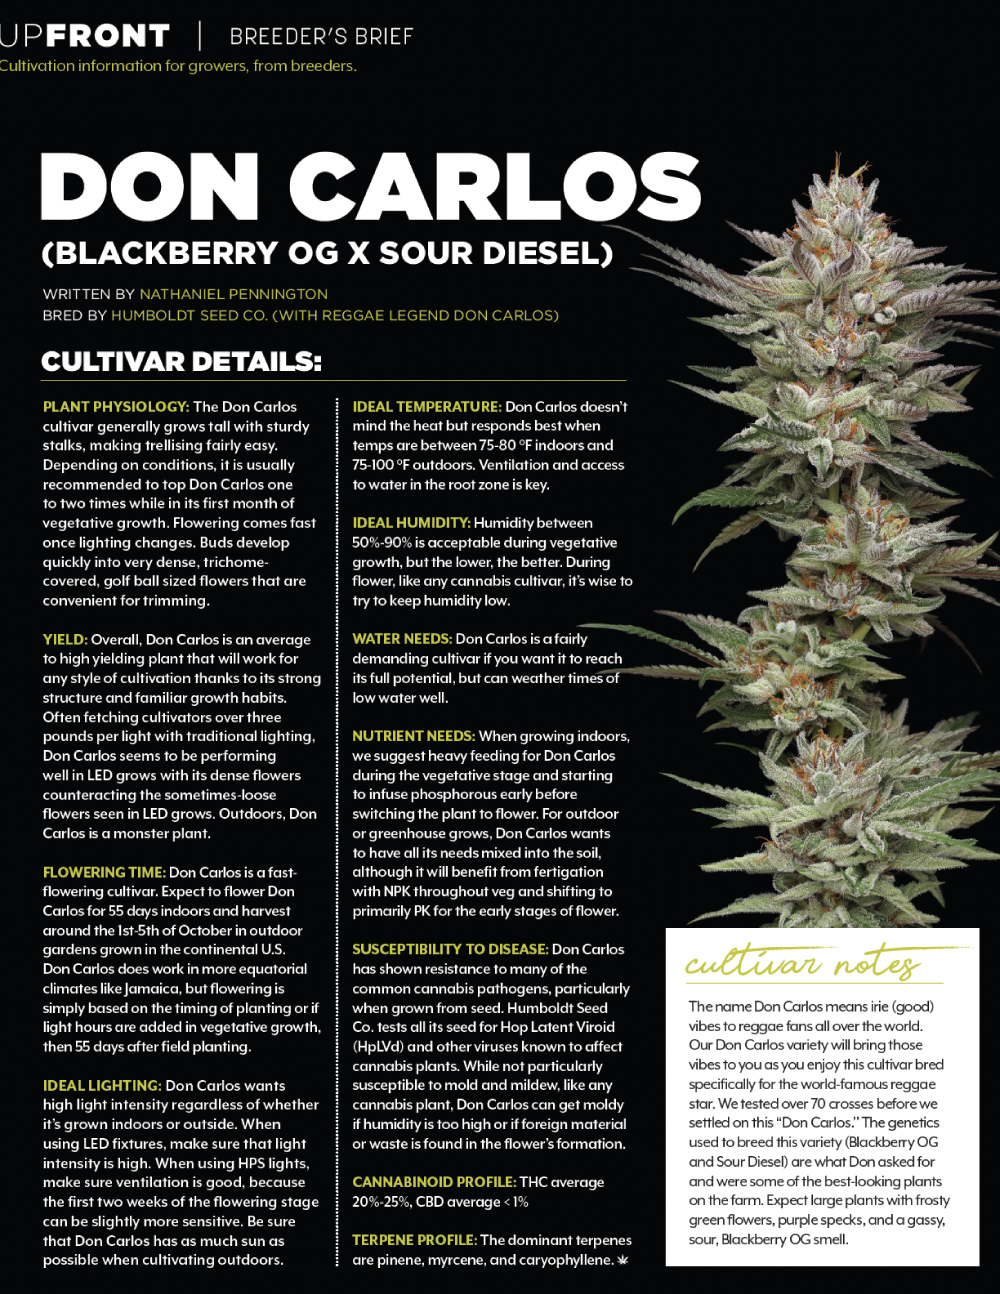 Cannabis Business Times - Don Carlos